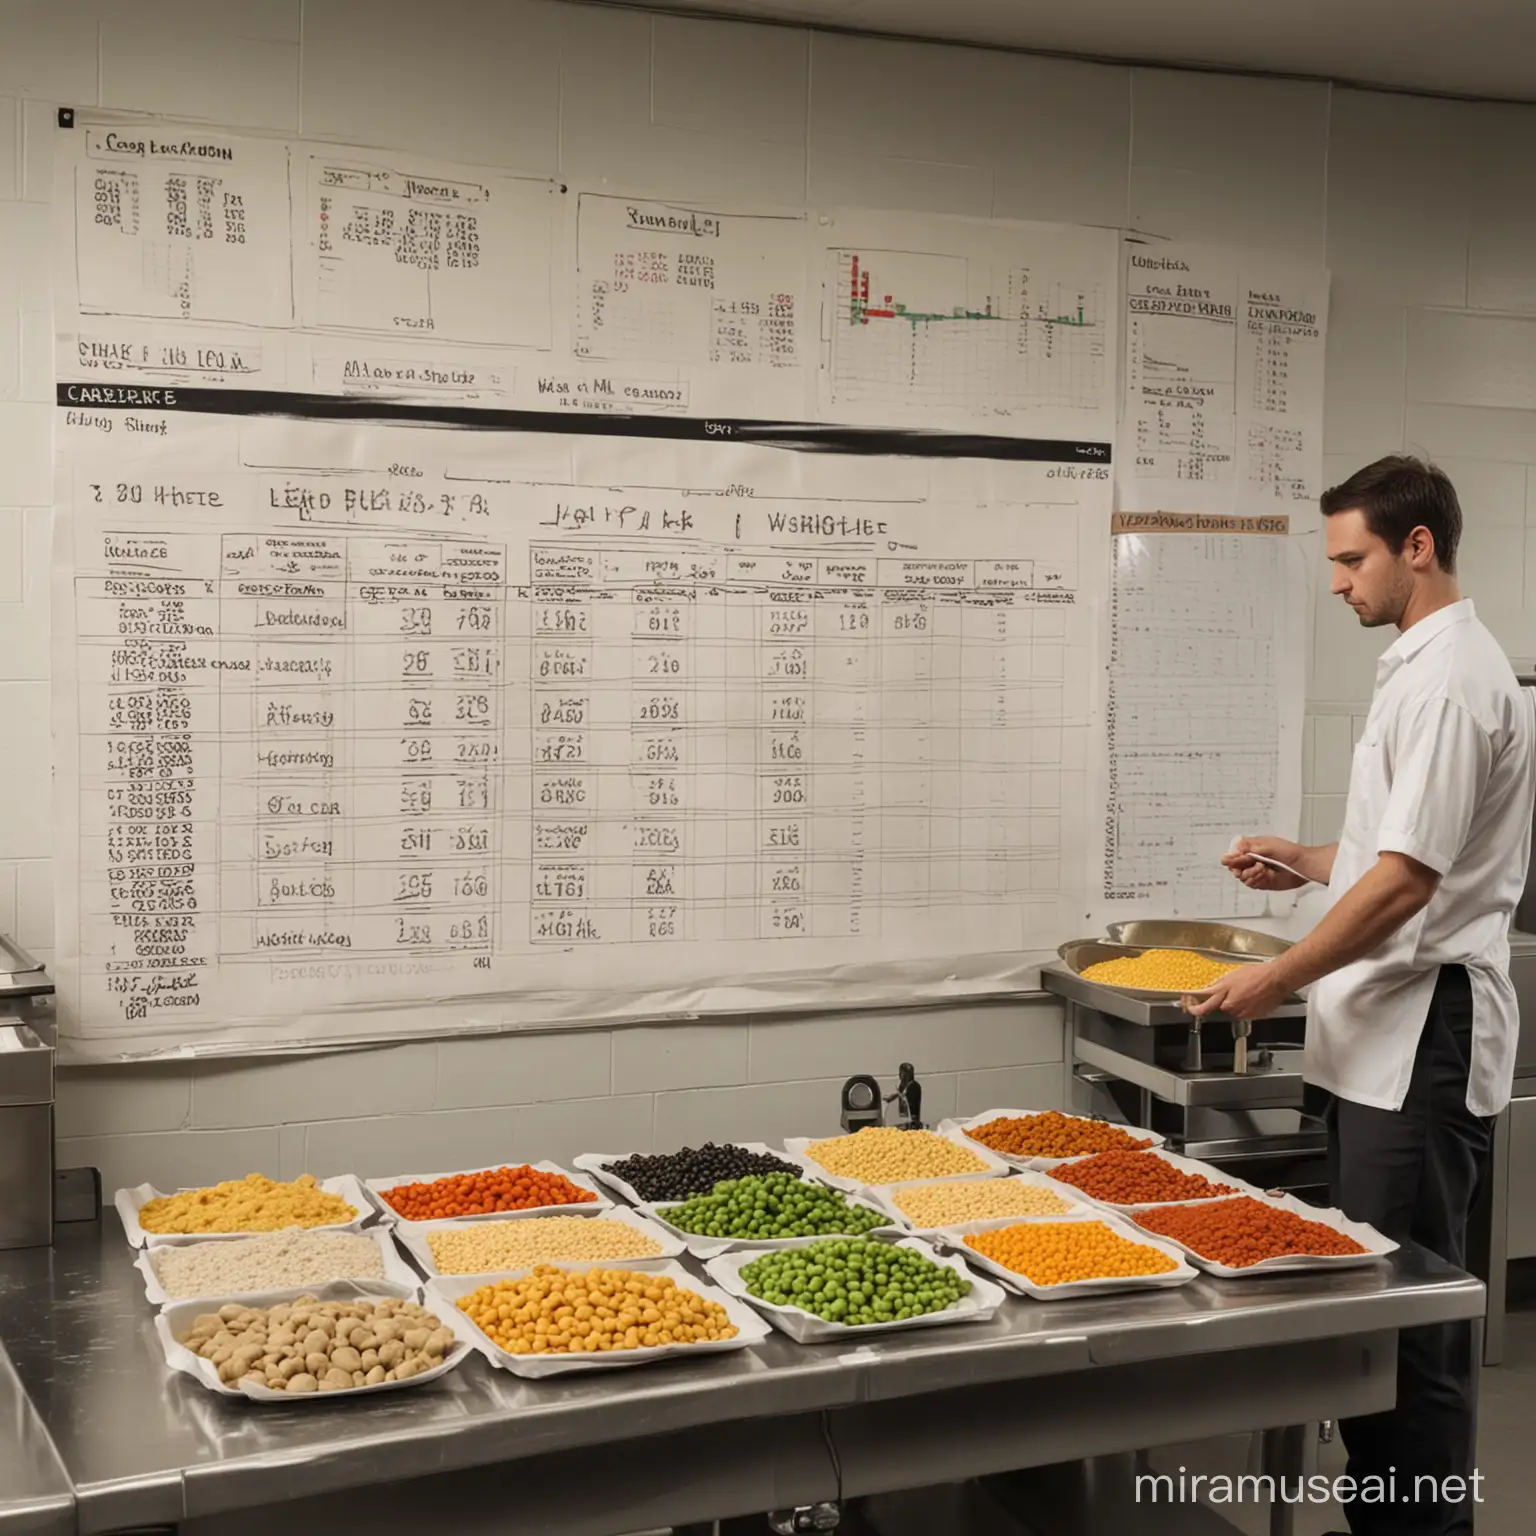 Criar um cenário em uma cozinha de produção com funcionários trabalhando e um funcionário pesando alimentos em Uma balança grande pessando ingredientes com um quadro na parede que mostra gráficos e tabelas de custos